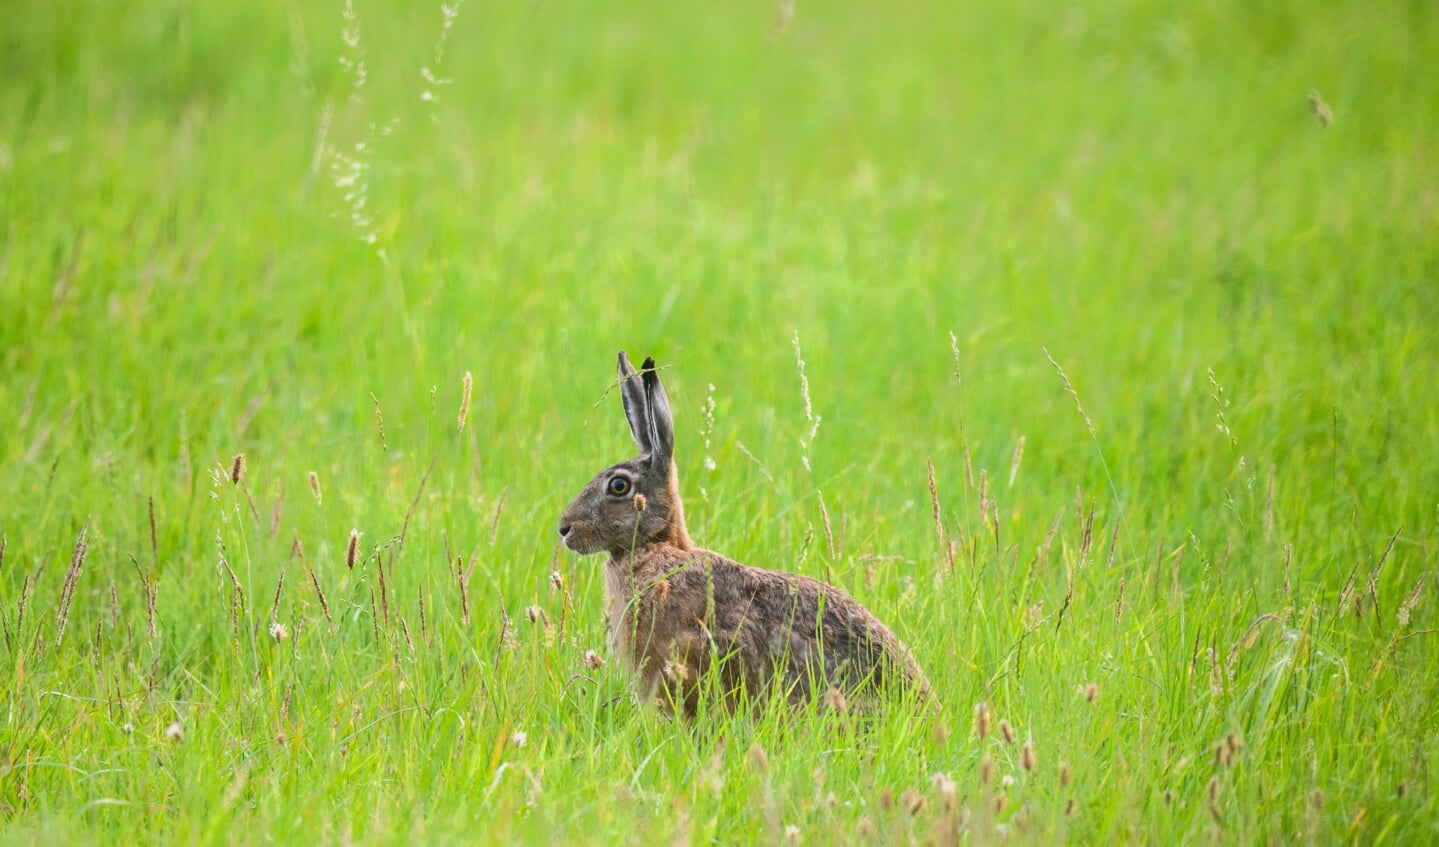 Harer har været naturligt hjemmehørende i Europa i tusindvis af år. Intensivt landbrug har dog bragt dens antal kraftigt ned. De seneste få år har den været i fremgang i Slesvig-Holsten. Foto:  